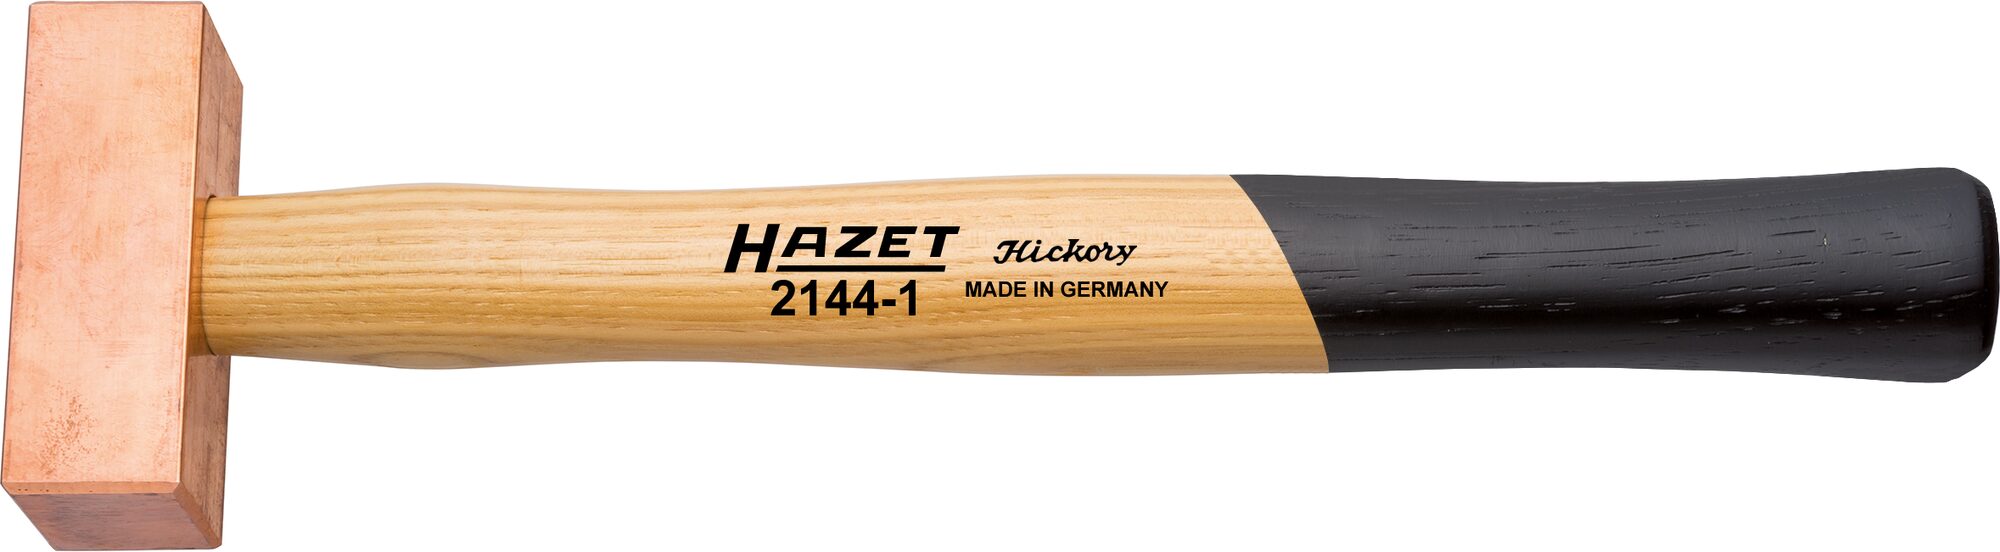 HAZET Kupferhammer 2144-1